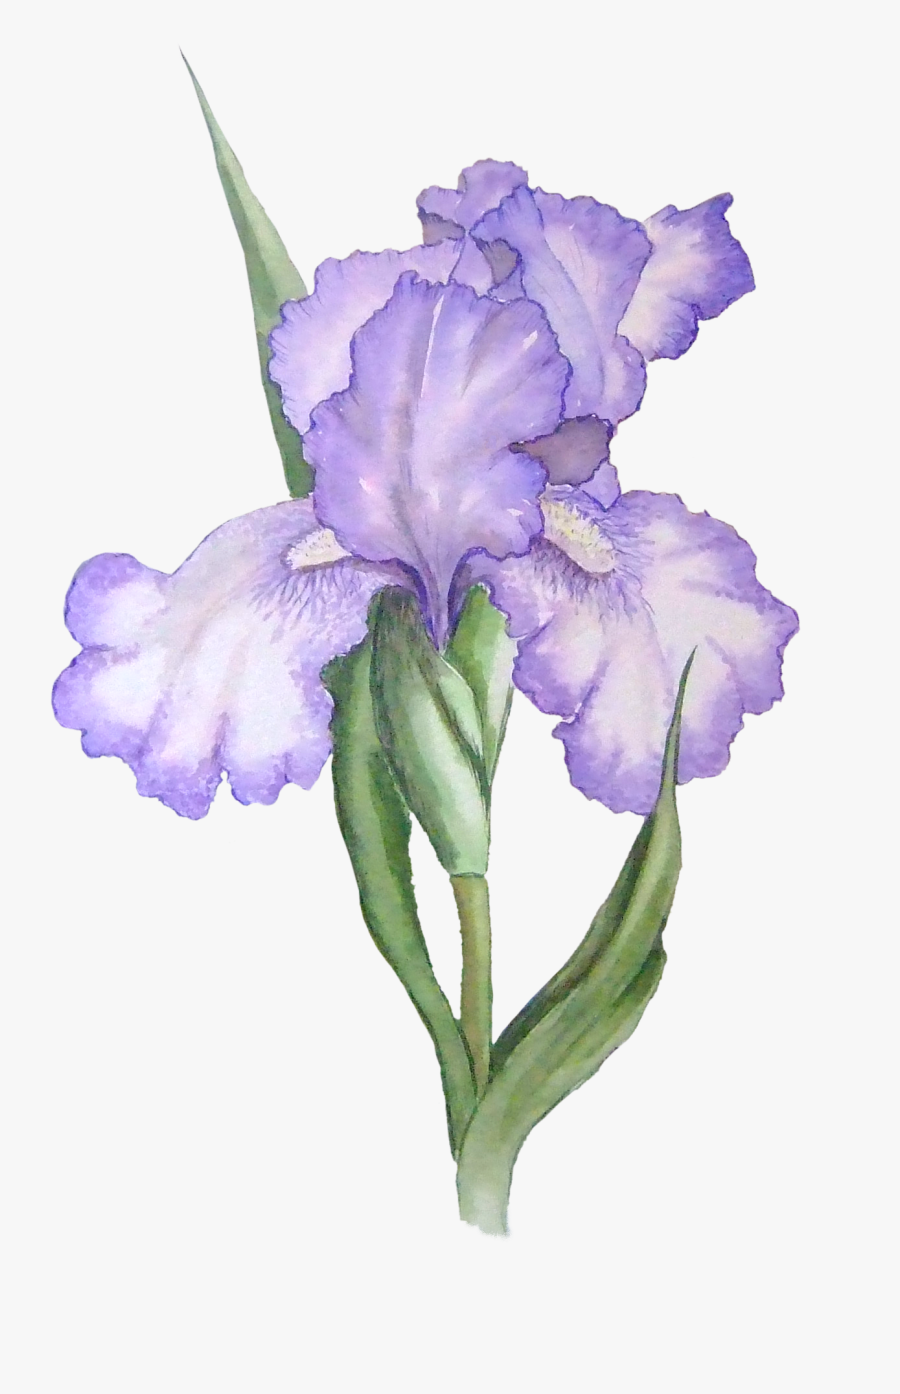 Transparent Flower Clipart Png - Watercolor Purple Flower Transparent Background, Transparent Clipart